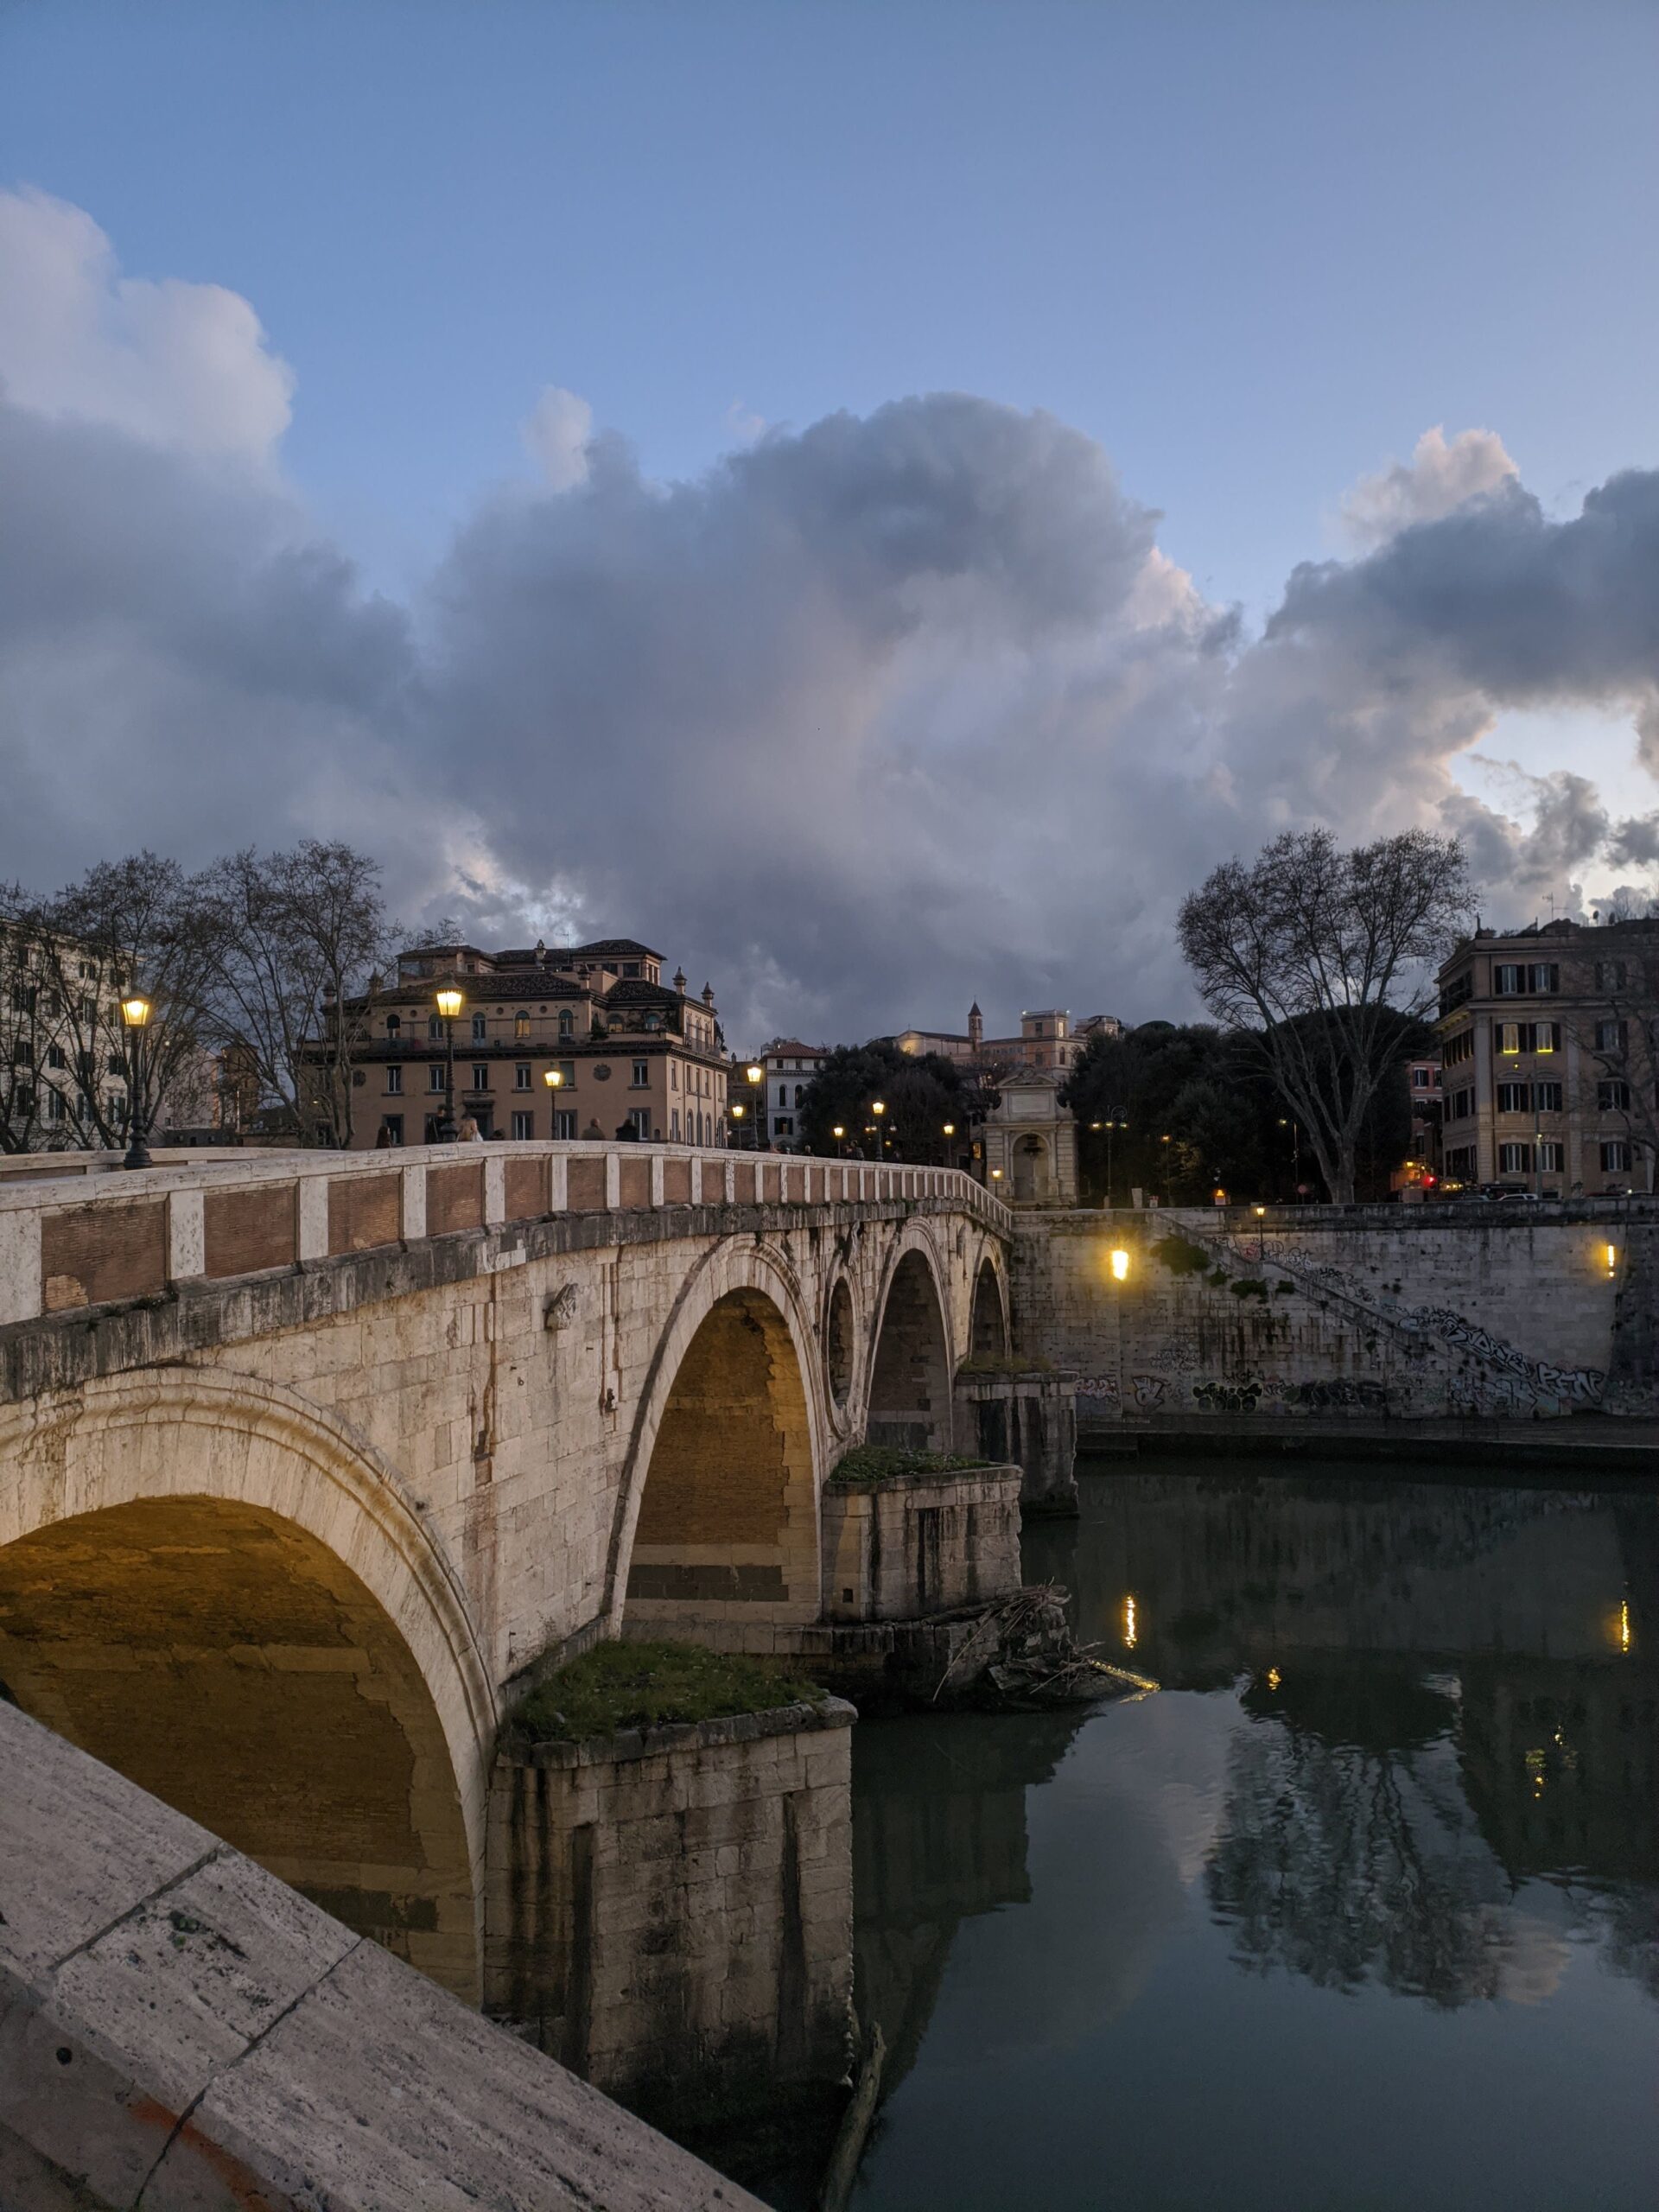 A histórica Ponte Sisto em Roma durante o crepúsculo, com o céu dramaticamente nublado refletido sobre as águas tranquilas do rio Tibre, enquanto as luzes da cidade começam a se acender, destacando a beleza da arquitetura e do ambiente ao entardecer.